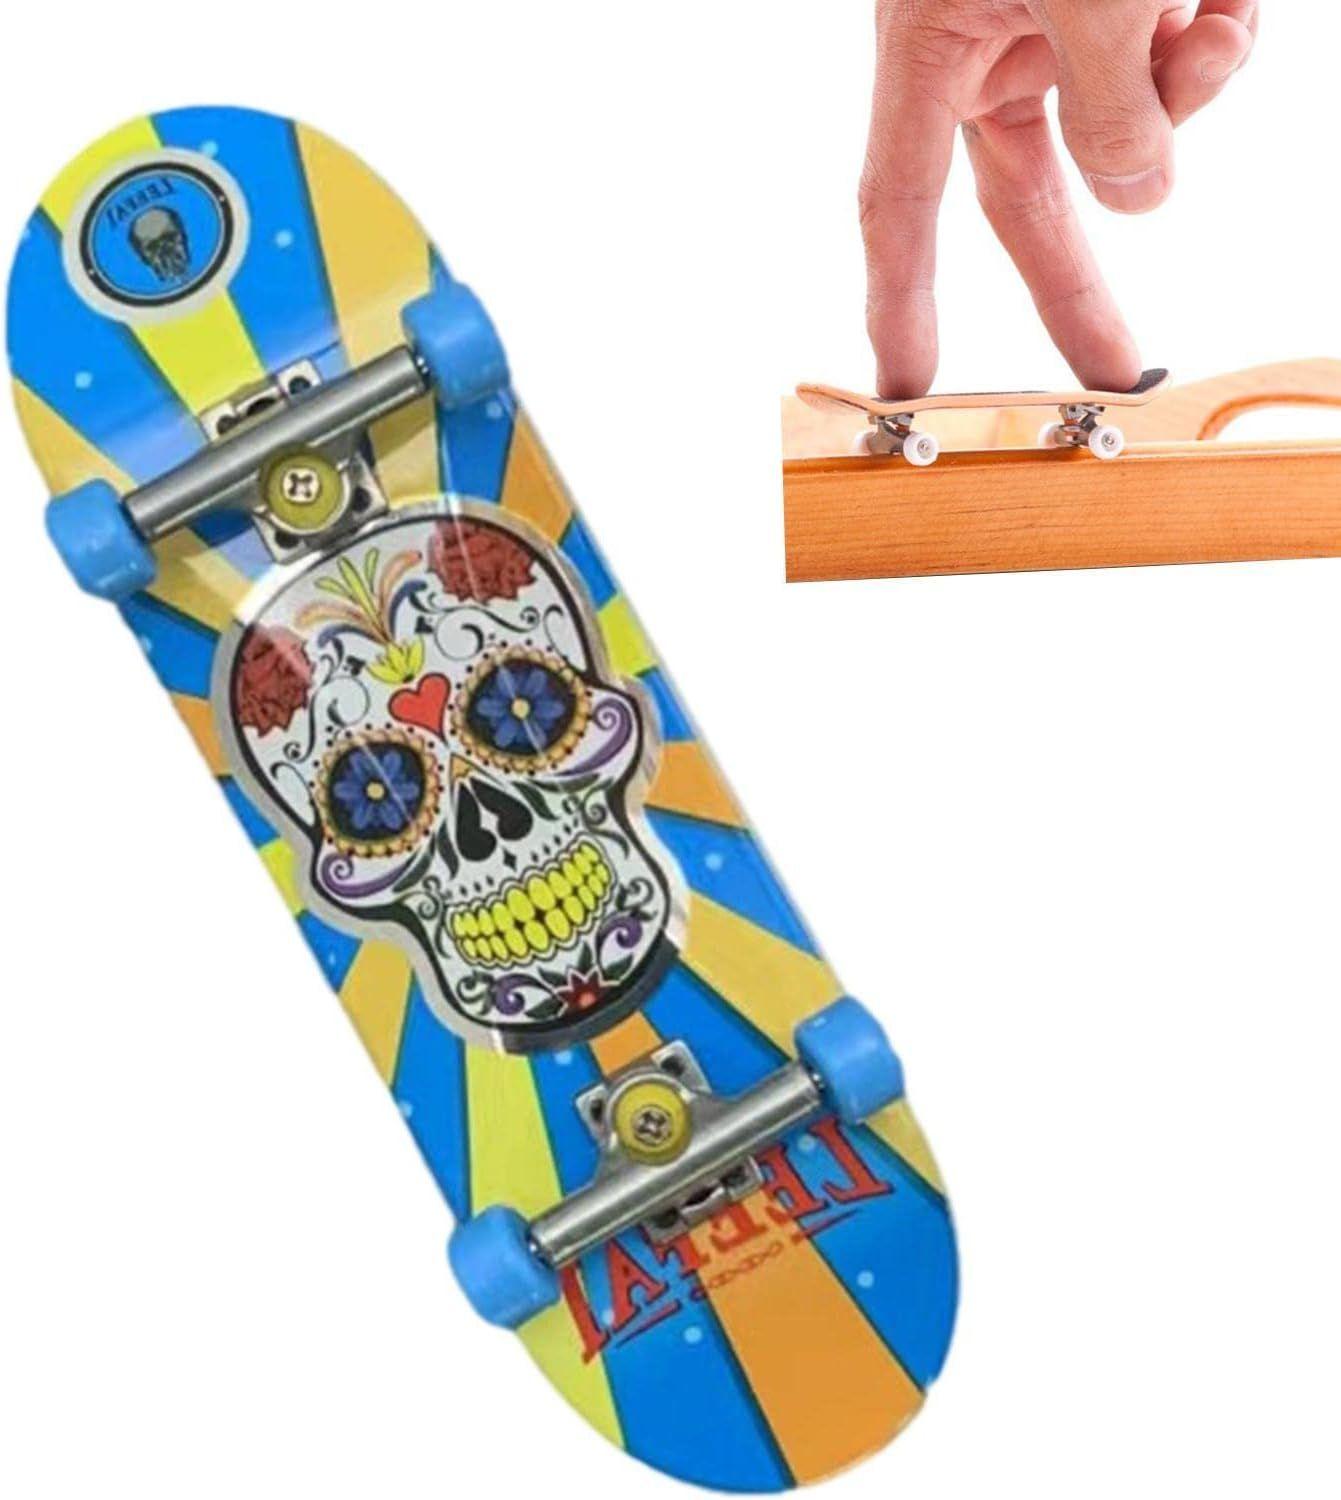 Planches à roulettes, Mini Touches pour Un Mouvement créatif du Bout des  Doigts,Skateboard Jouets éducatifs Party Favors Jouets Fantaisie pour  Enfants Garçons Filles Cadeaux, Party Favors